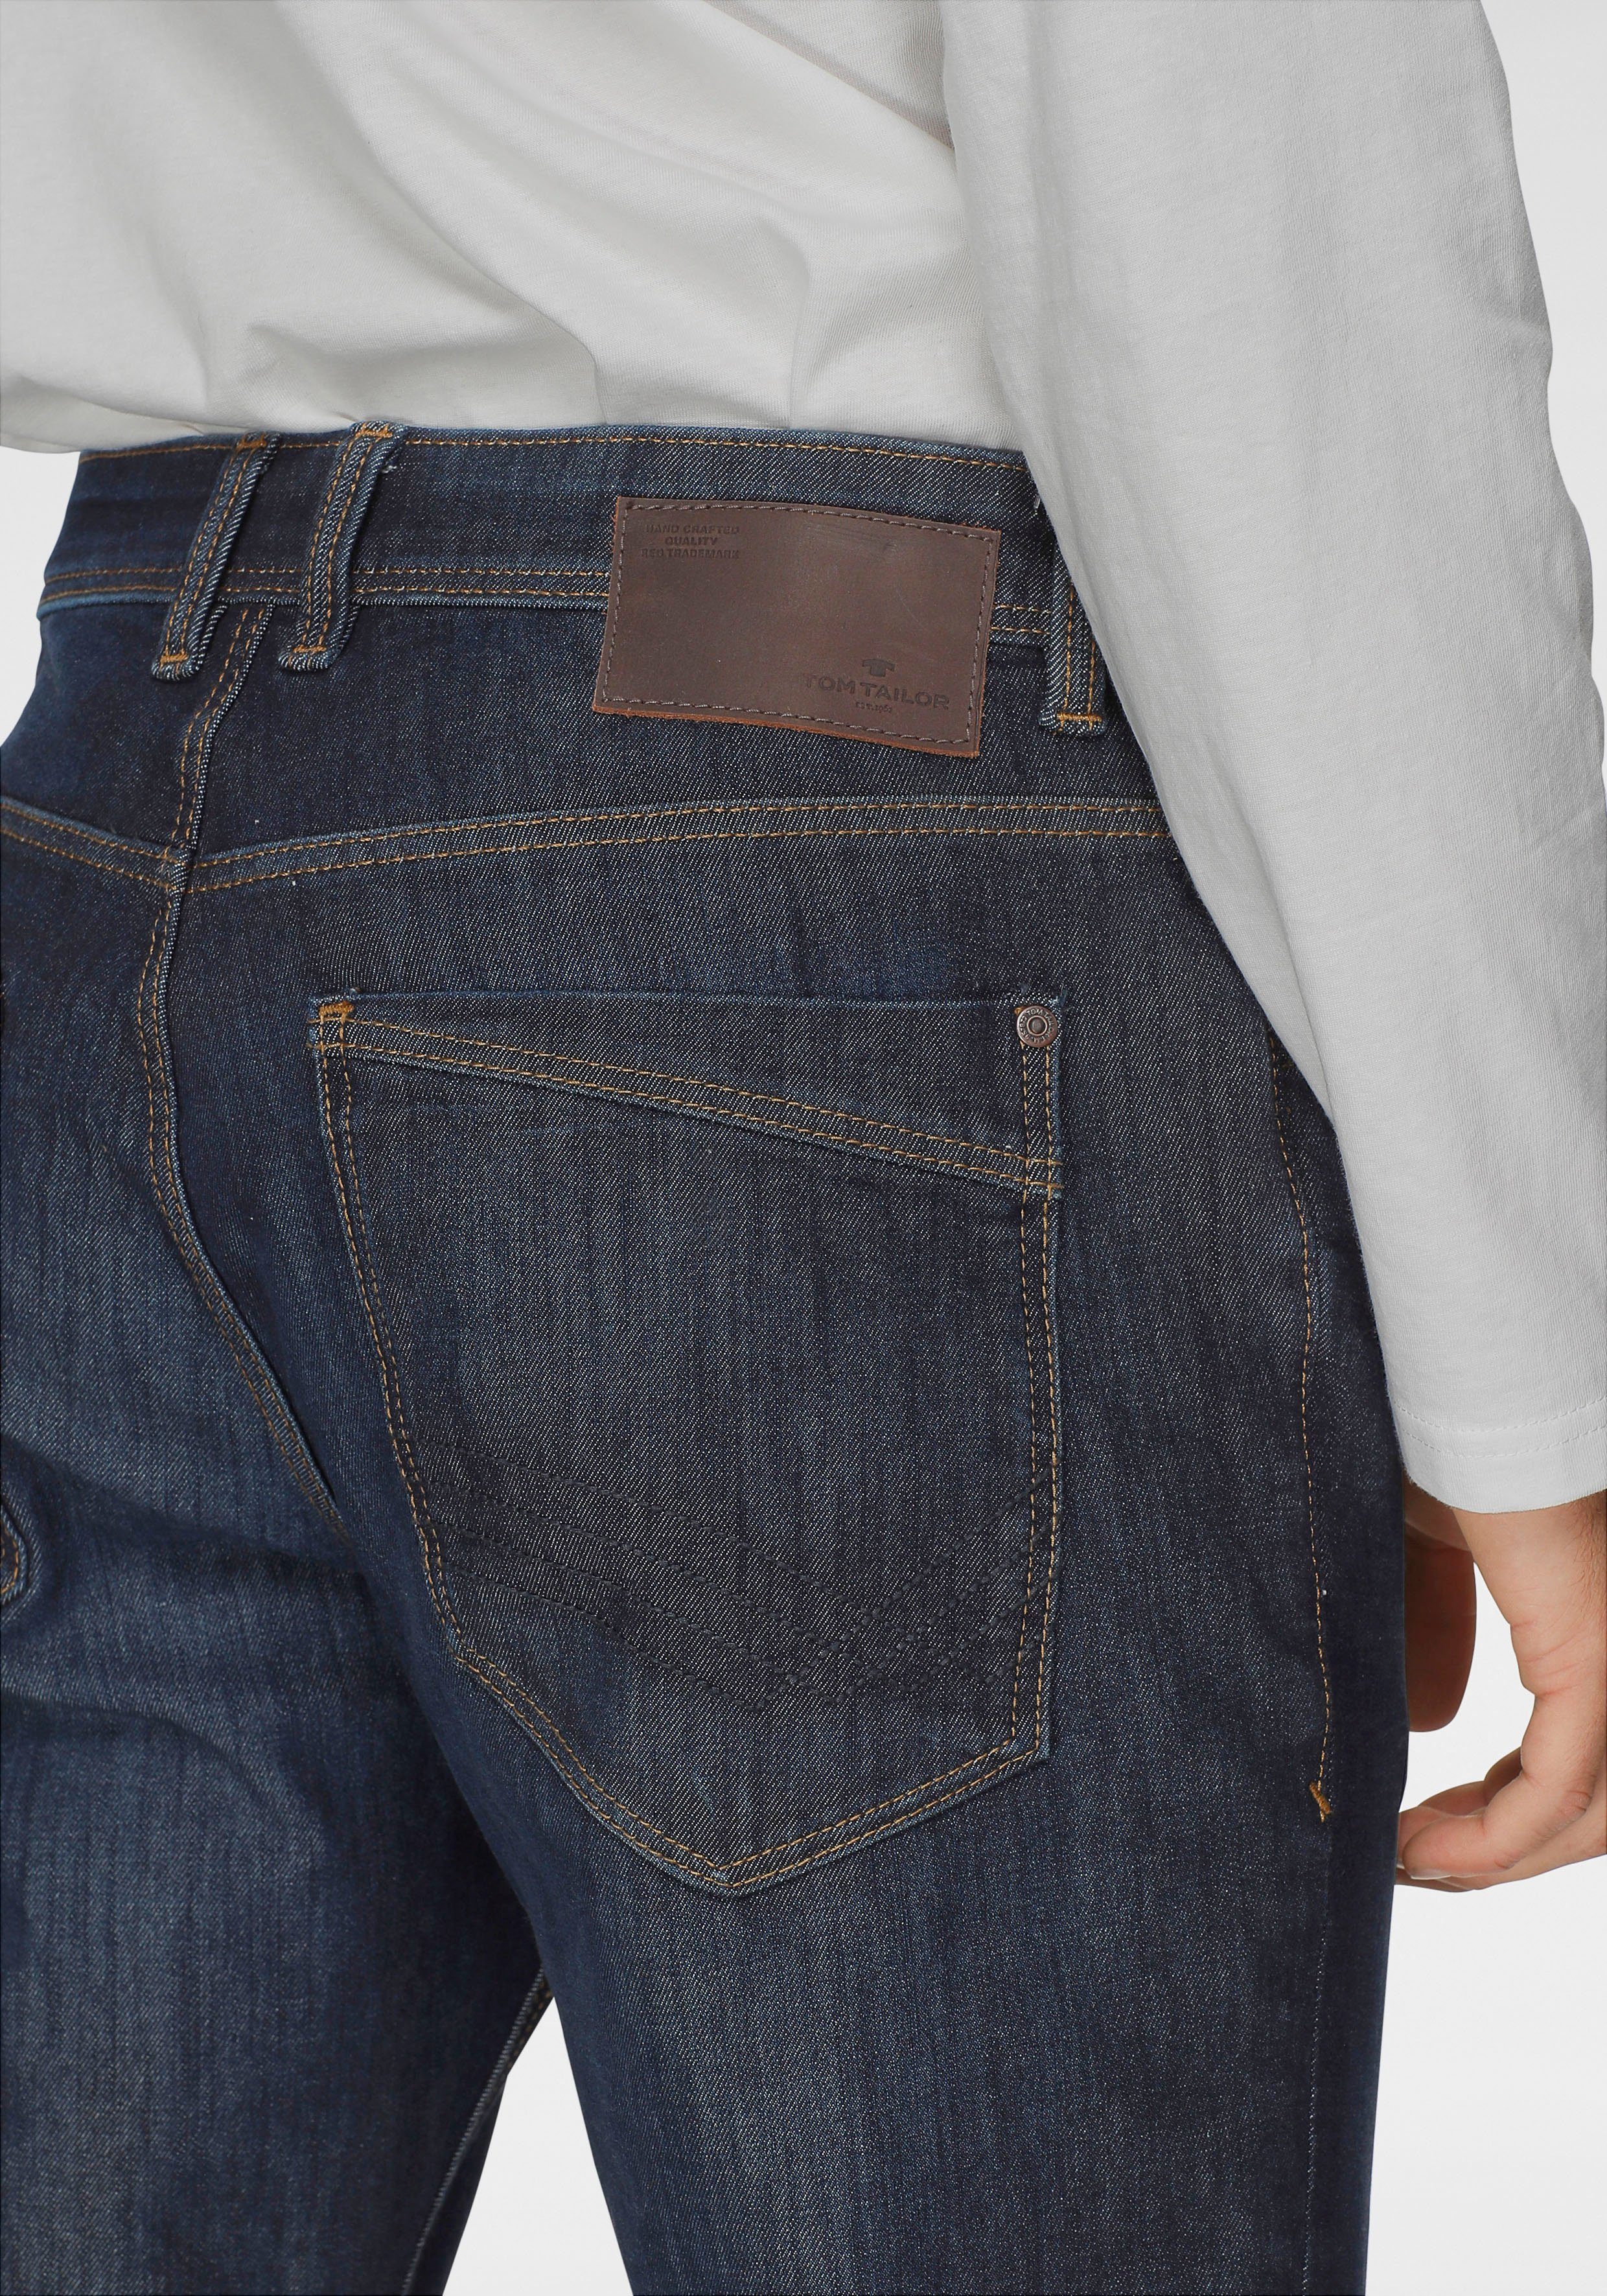 TAILOR TOM Josh mit rinsed Reißverschluss blue 5-Pocket-Jeans